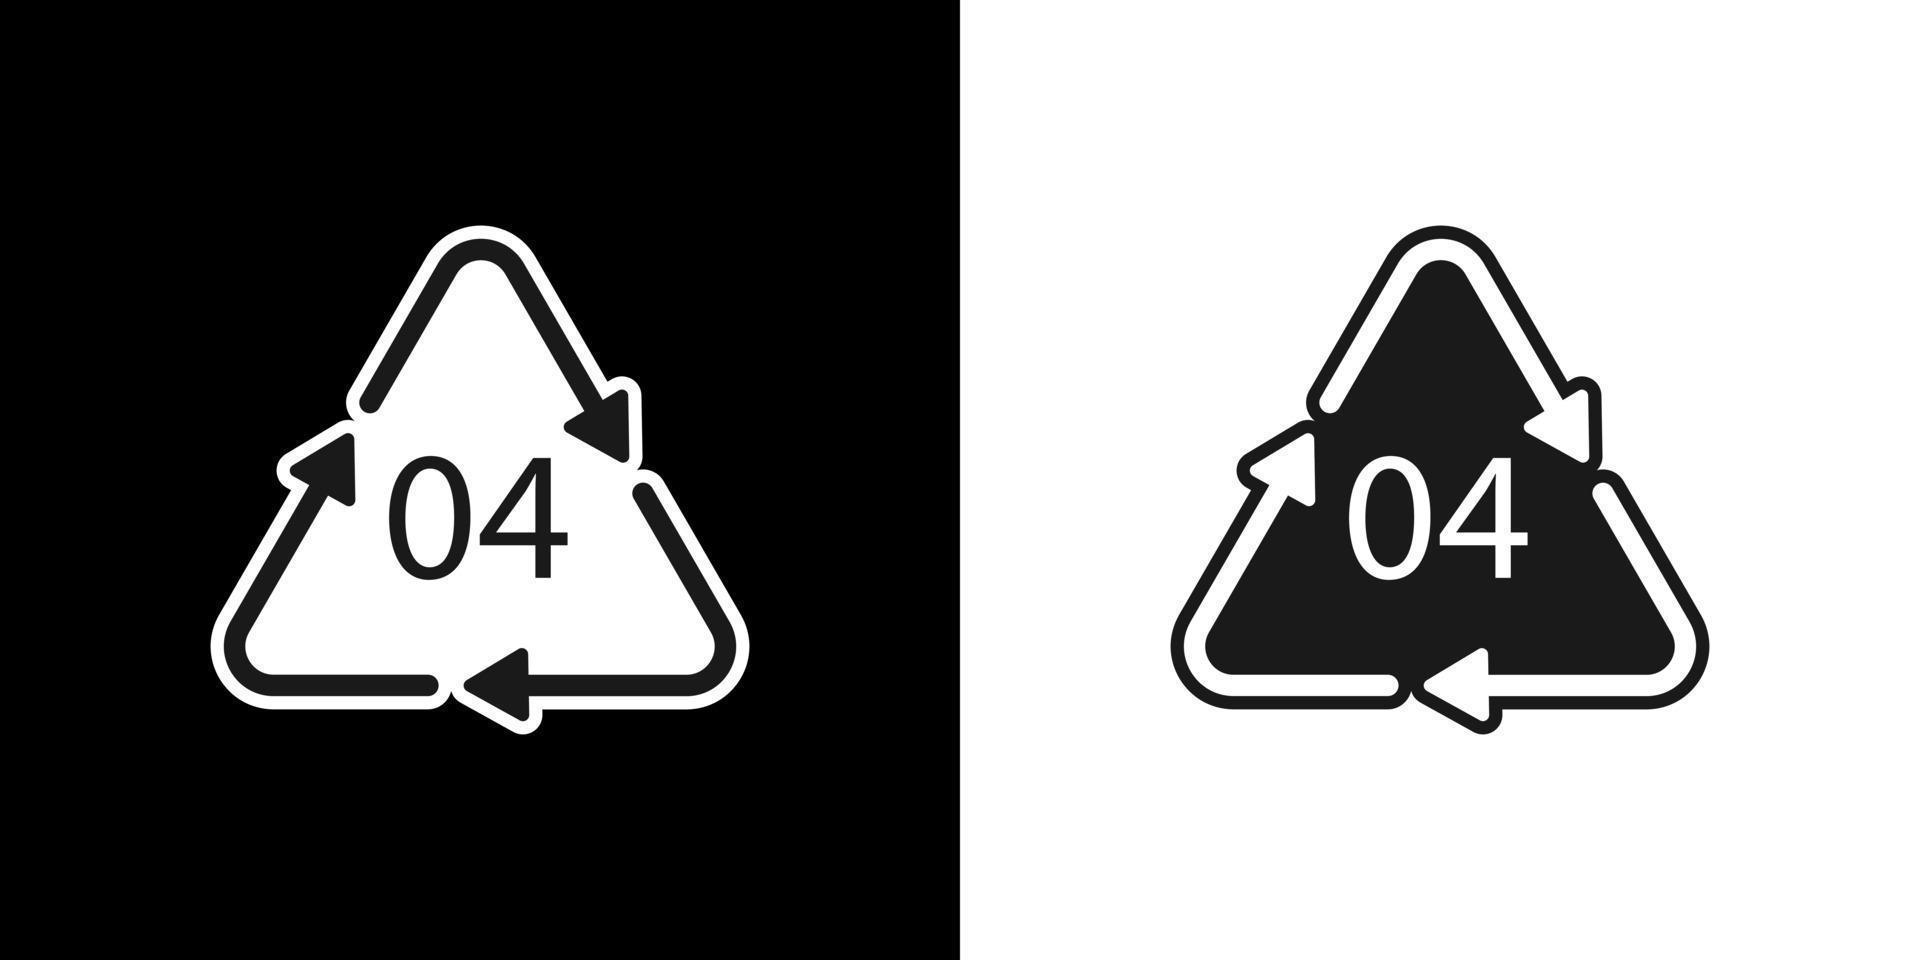 pe-ld 04 symbole de code de recyclage. signe de polyéthylène basse densité de vecteur de recyclage de plastique.